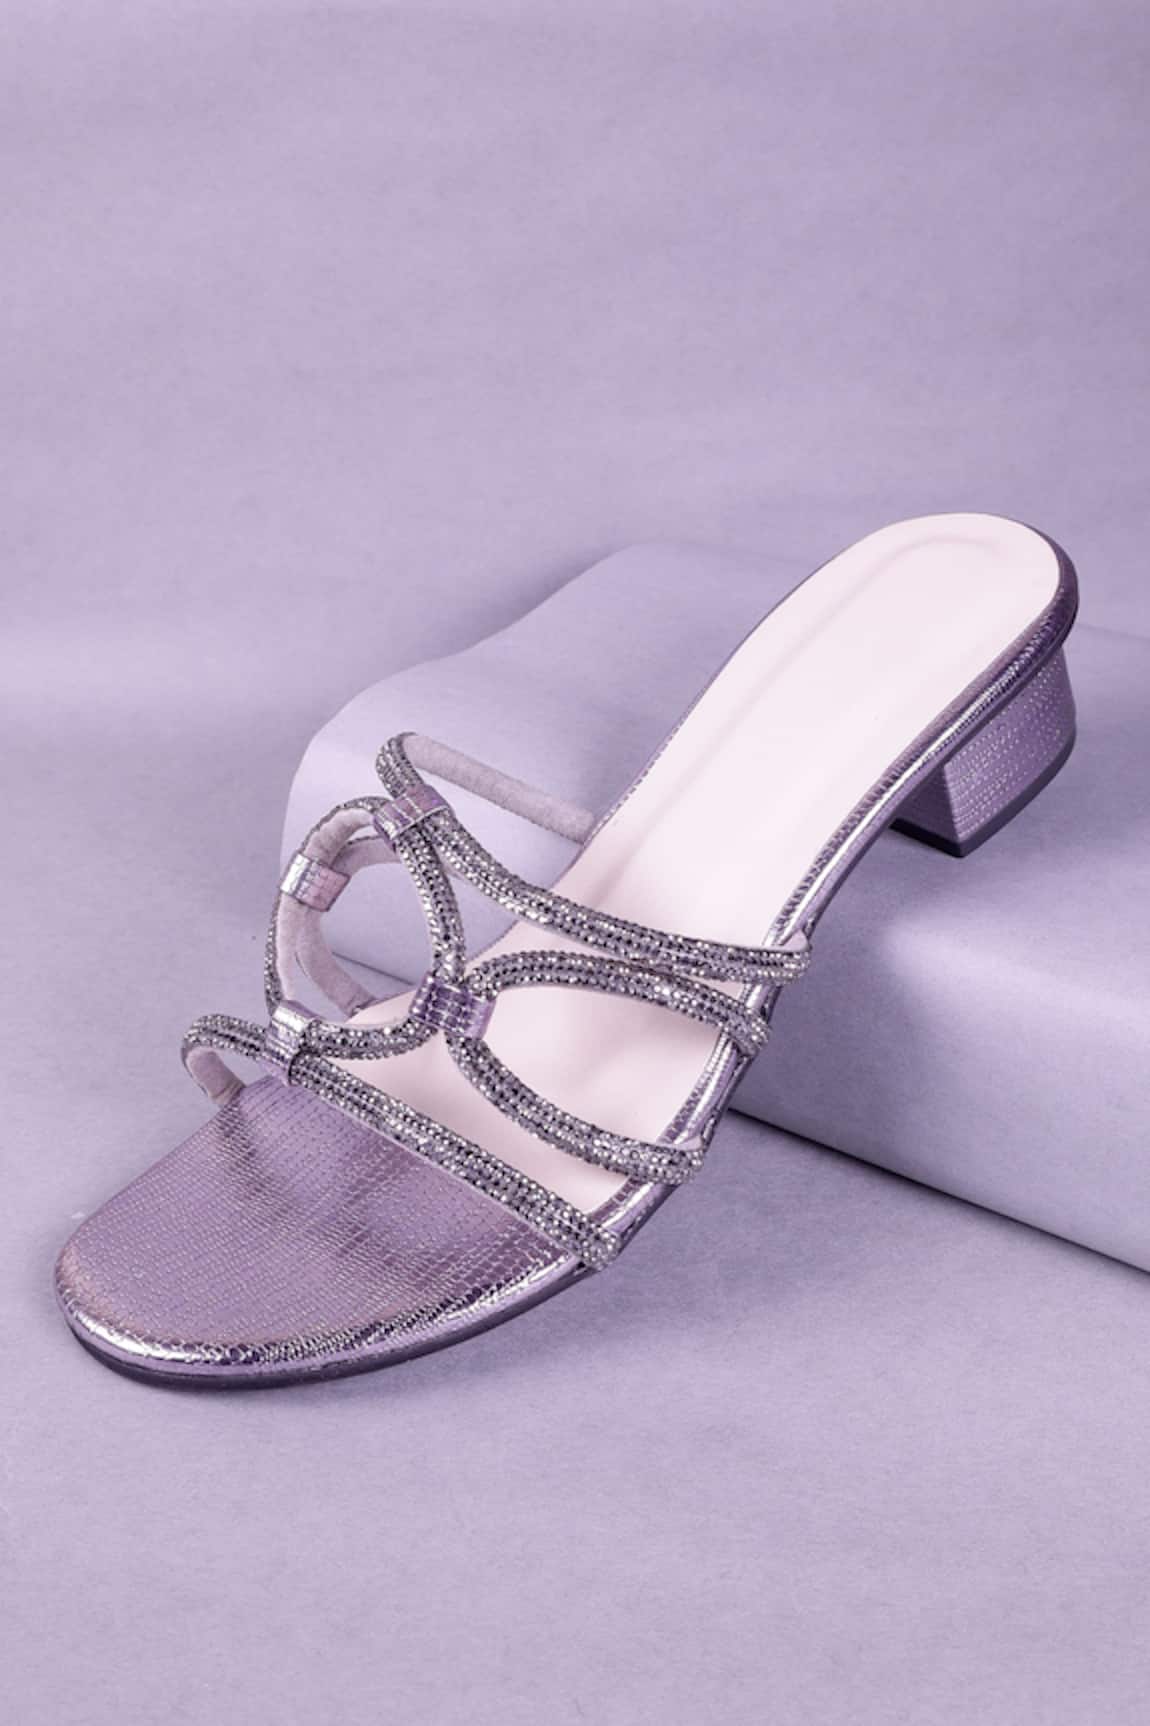 Sana K luxurious Footwear Embellished Cross Strap Heels